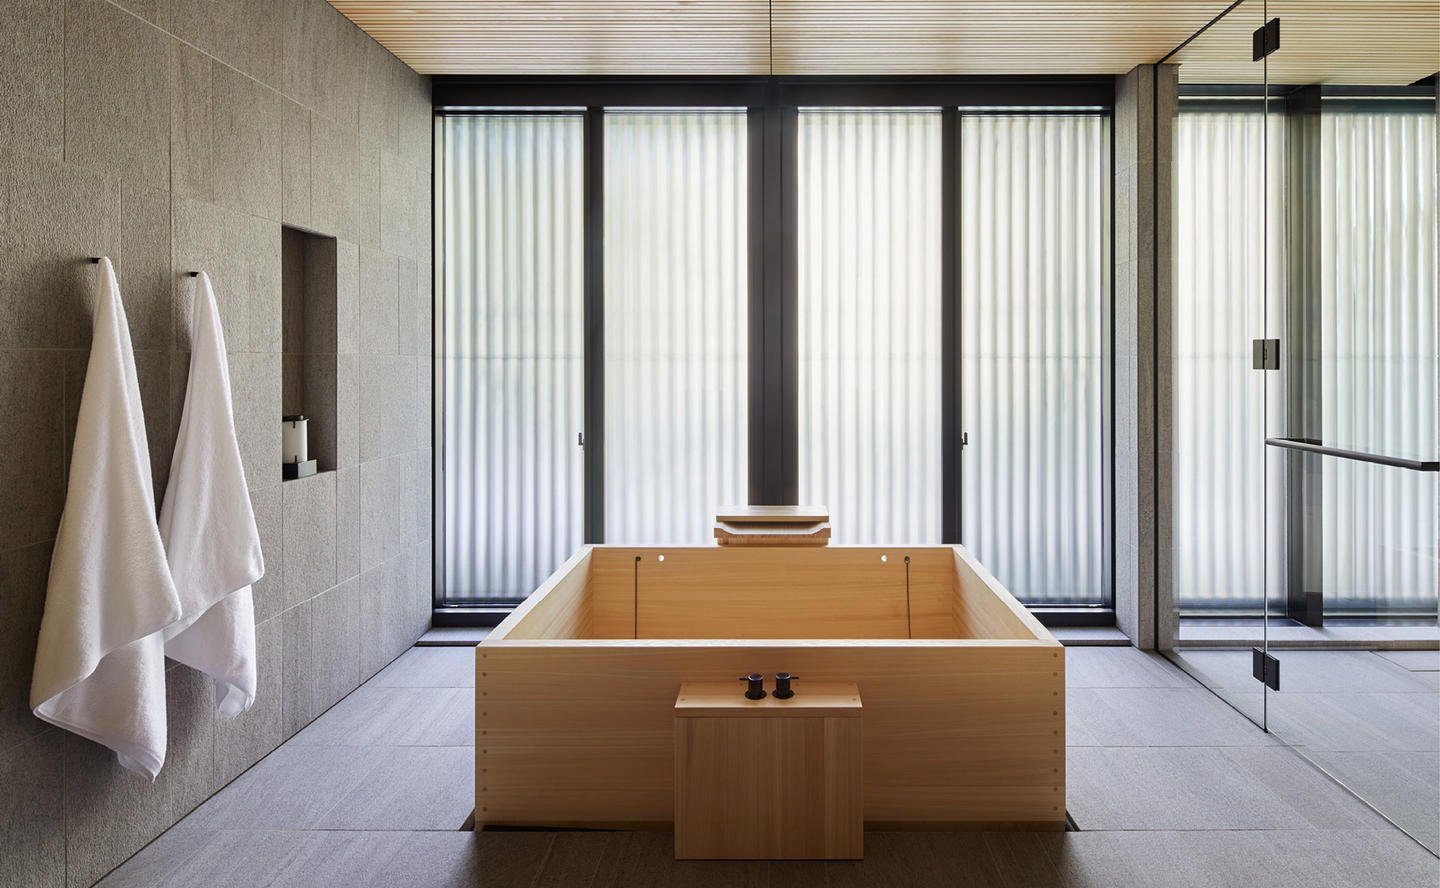 Bathroom, Kaede Room - Aman Kyoto, Japan